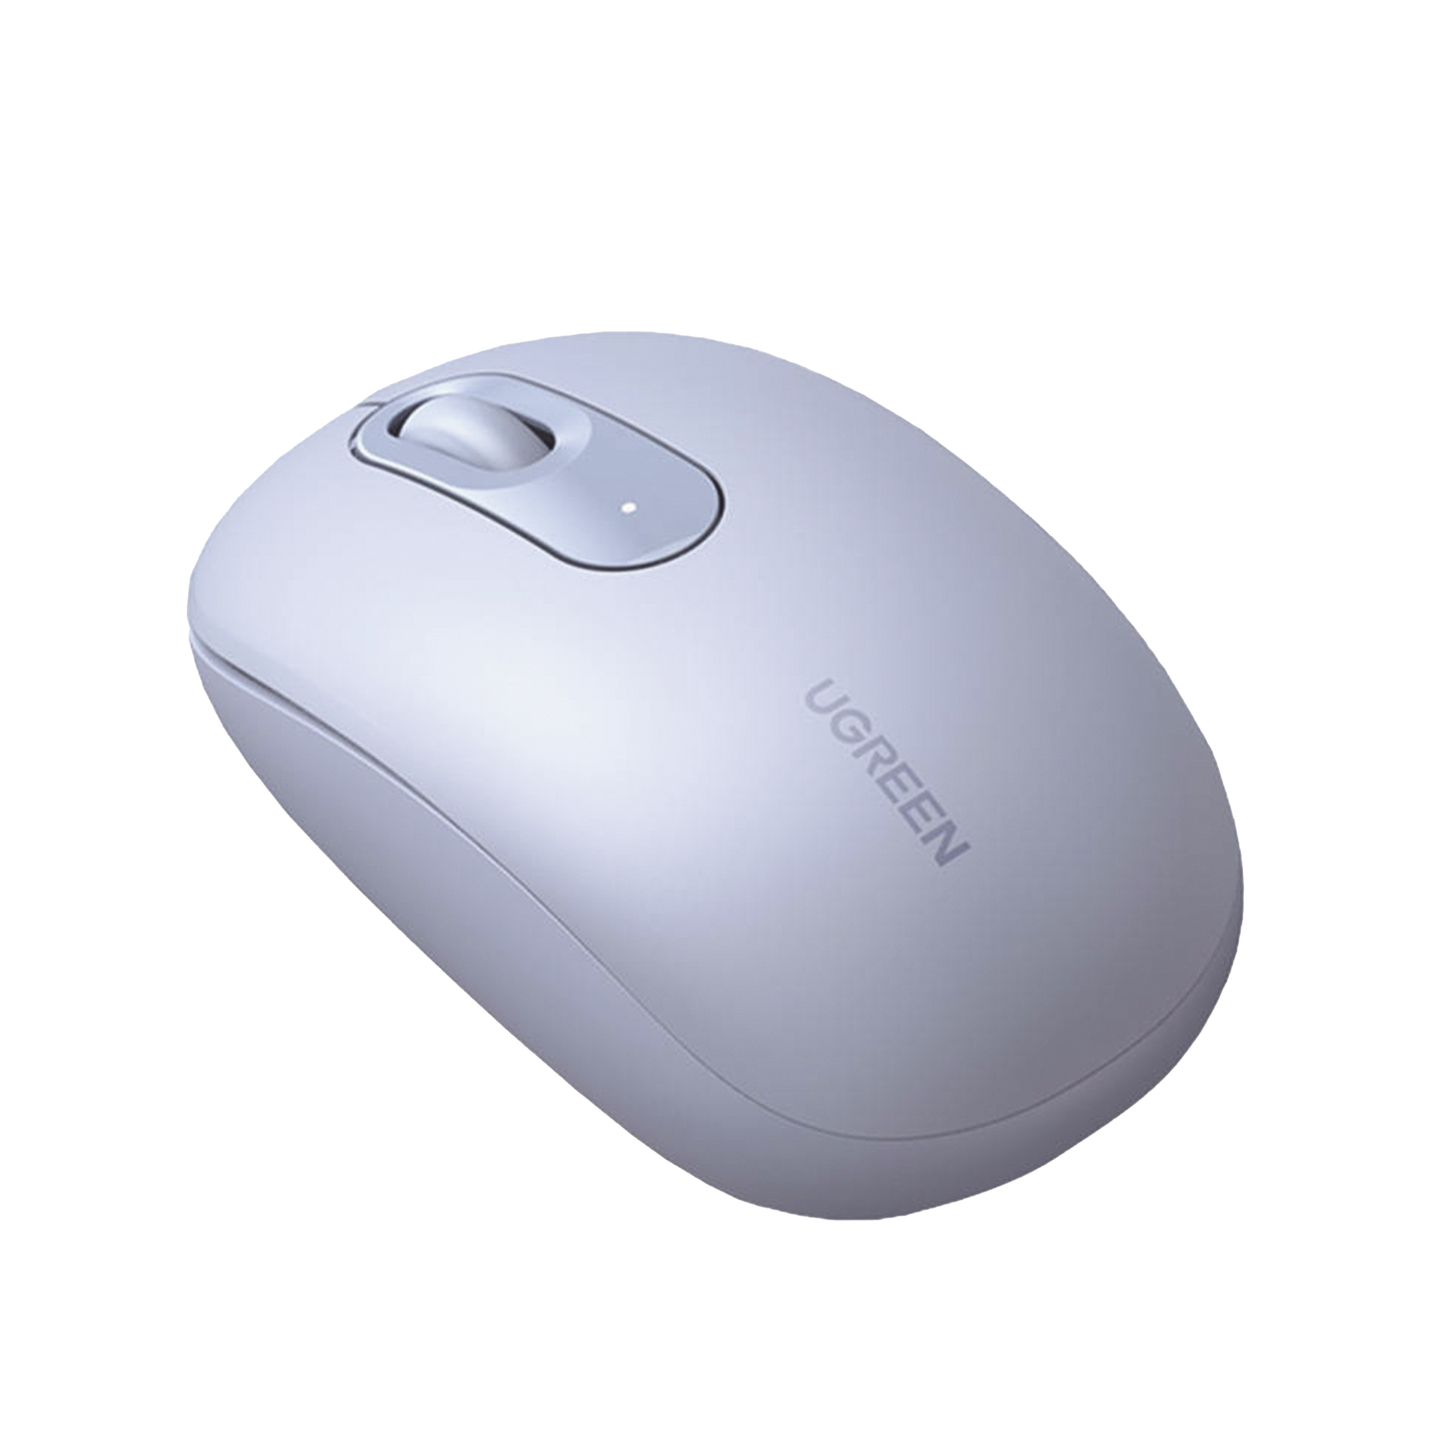 Mouse Inalámbrico 2.4G 800/1200/1600/2400 DPI / Función de 3 botones / Alcance 10m / Silencioso / Ergonómico / Anti-caída y Anti-interferencias / Color Dusty Blue / Batería Alcalina AA (incluida).